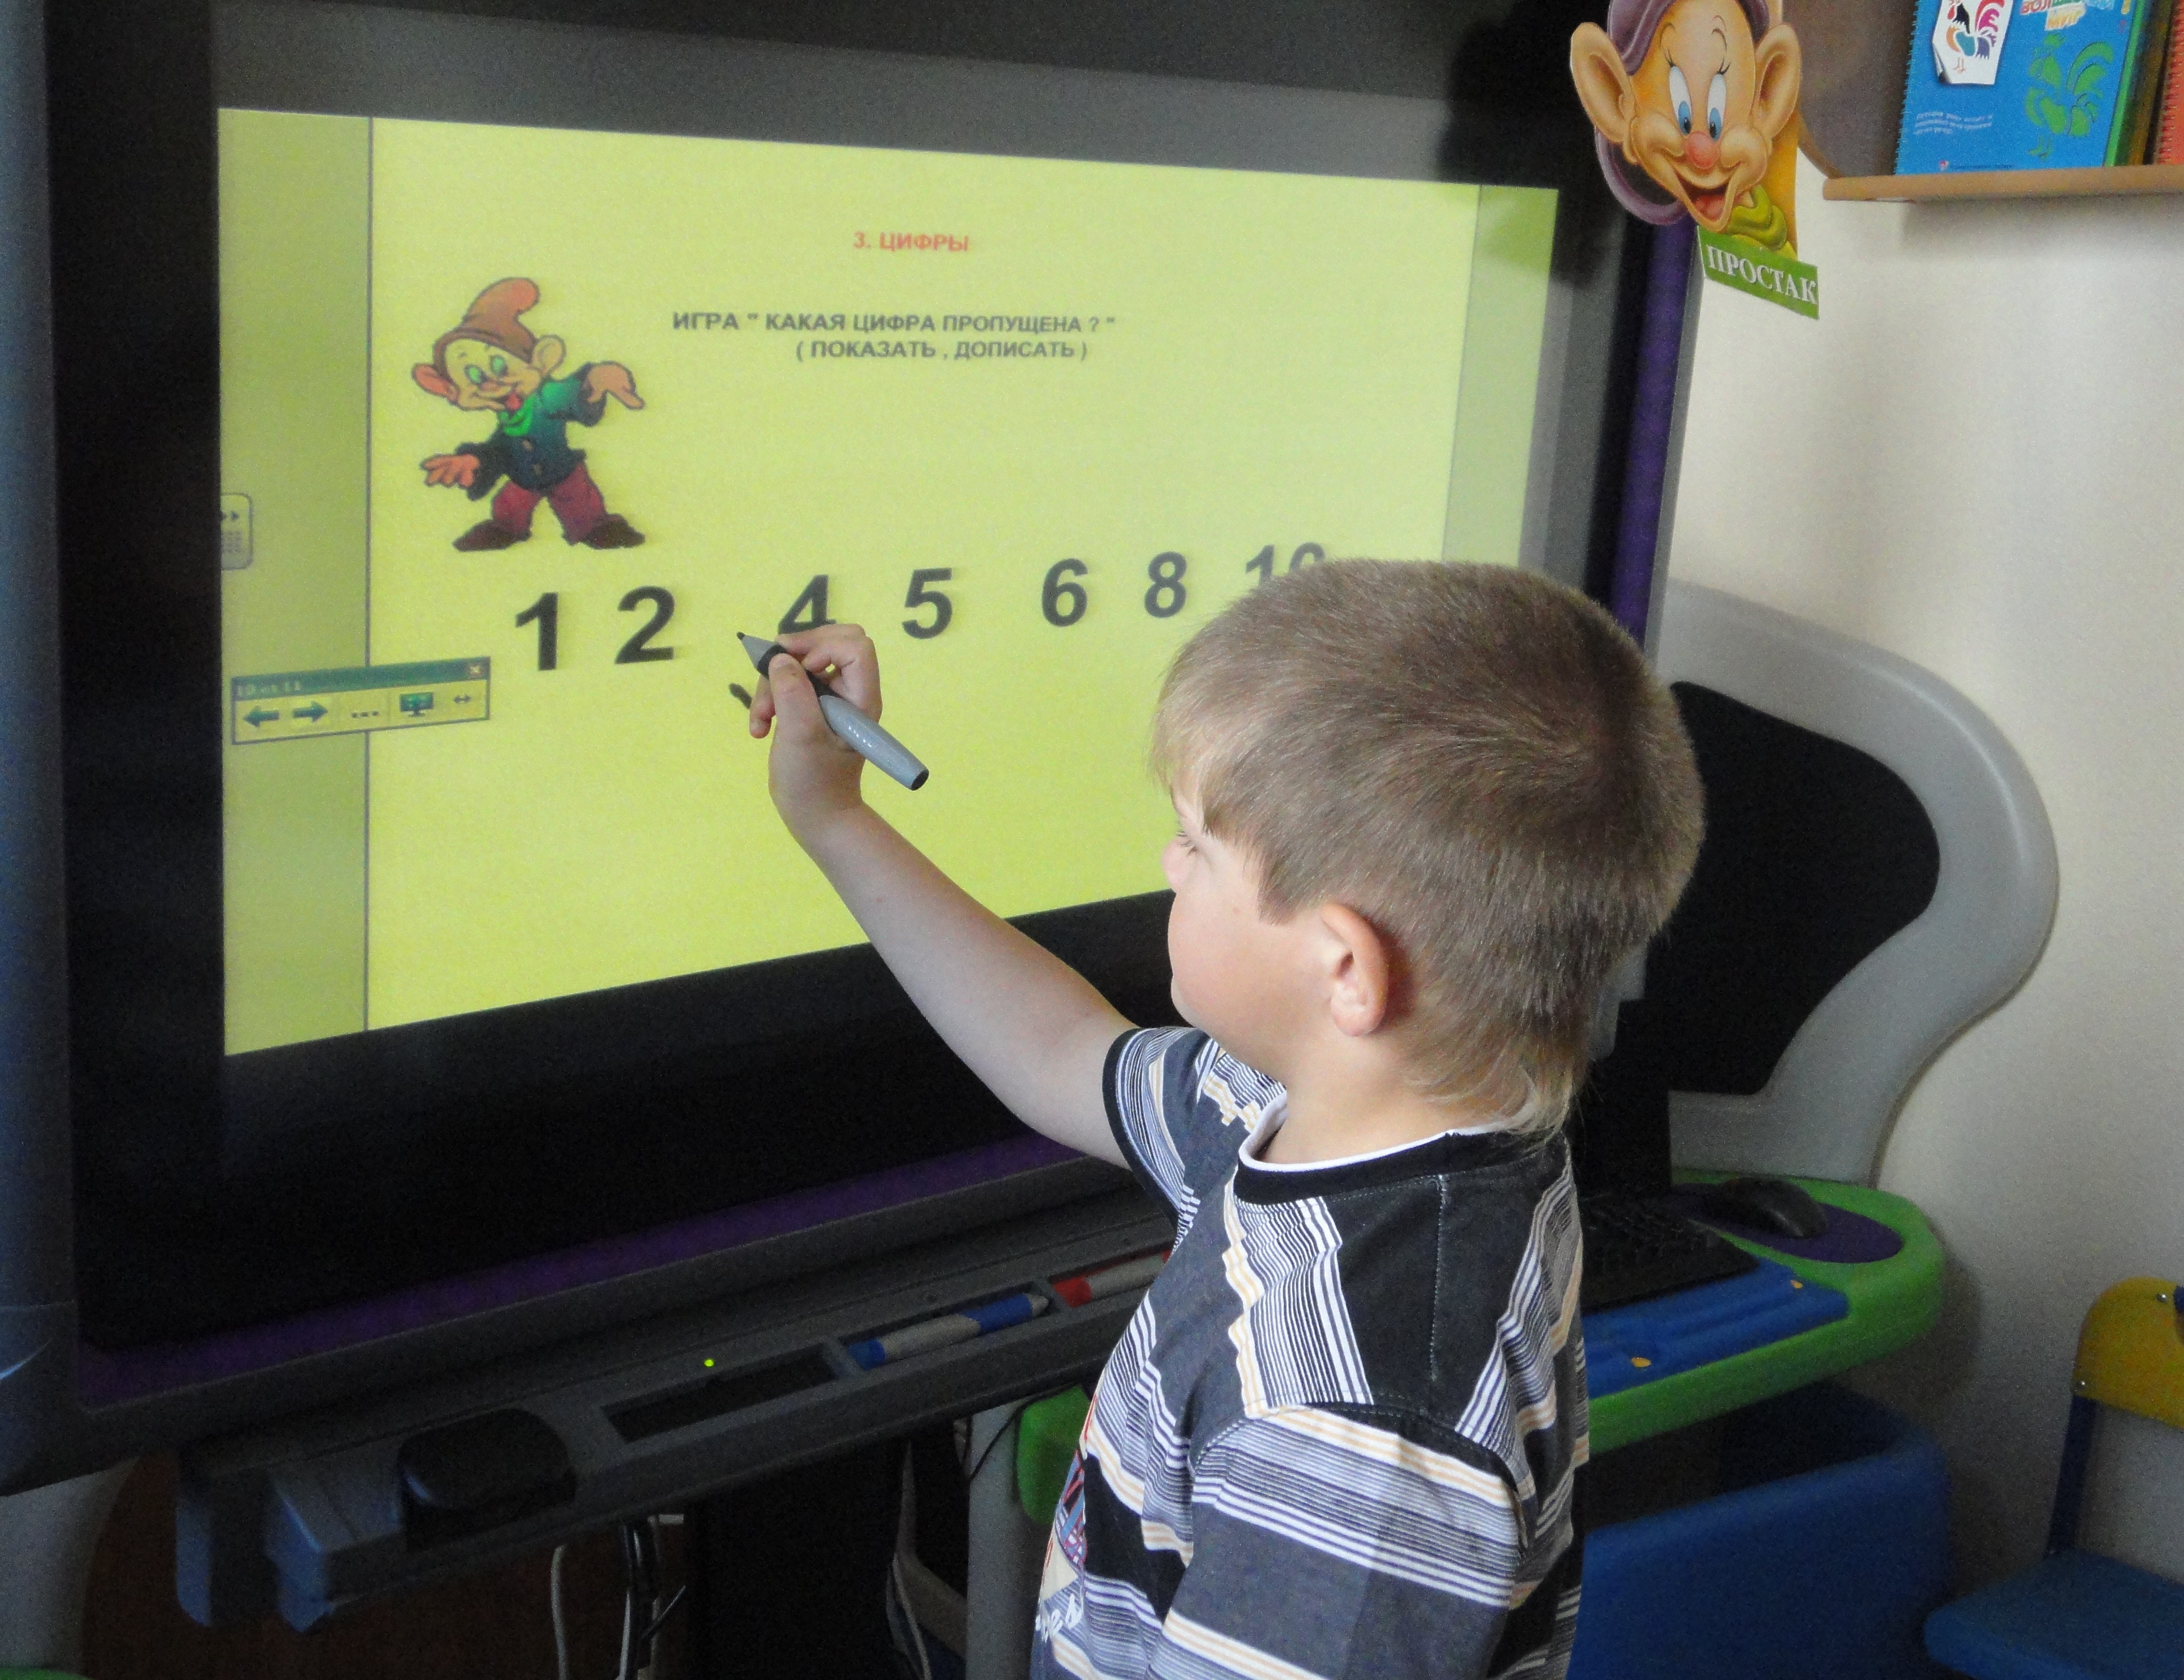 Интерактивная доска в детском саду